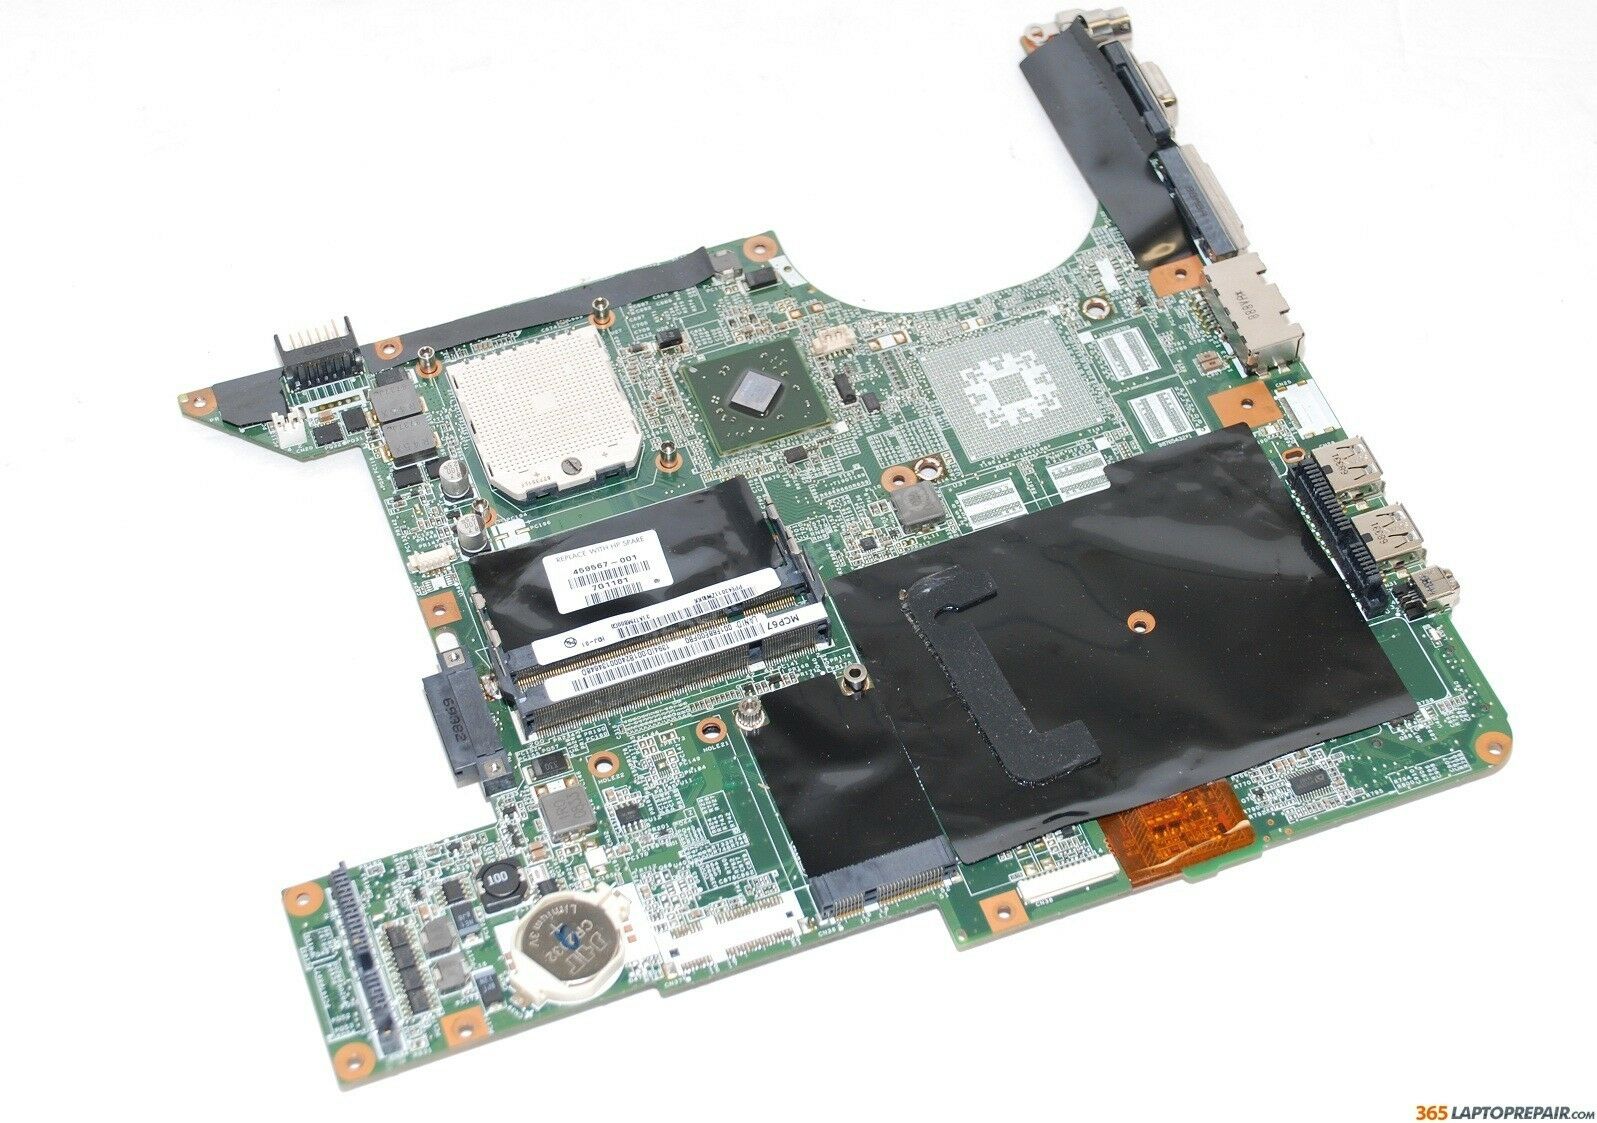 Genuine HP DV9000 DV9500 DV9700 DV9800 DV9900 AMD Motherboard 459567-001 Nice Compatible CPU Brand: AMD Brand